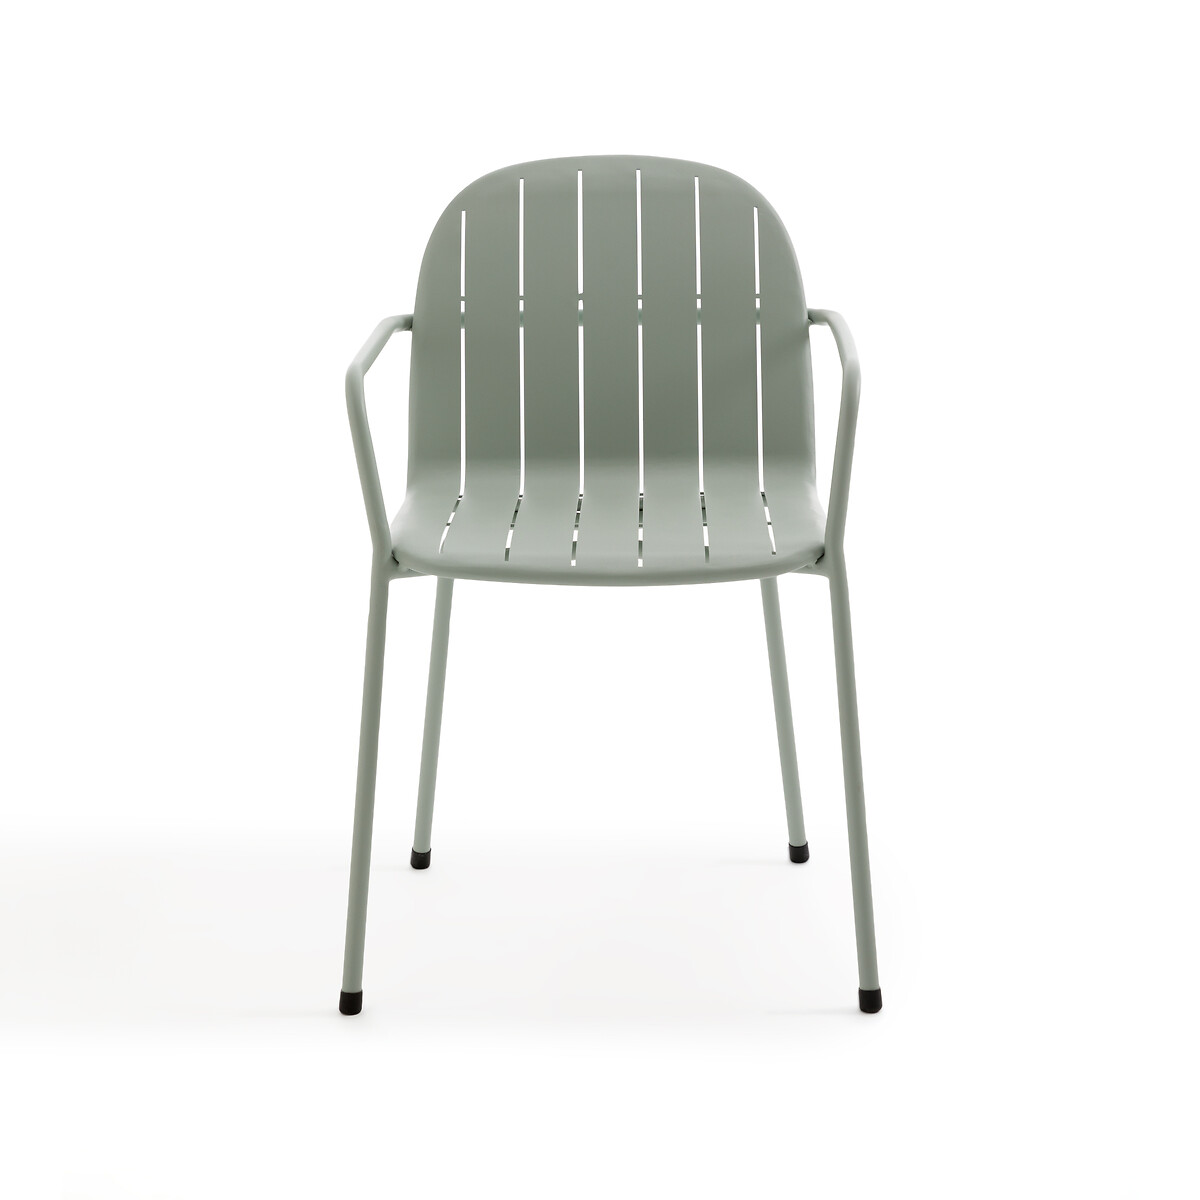 Кресло Для столовой садовое из алюминия Kotanne единый размер зеленый LaRedoute - фото 3